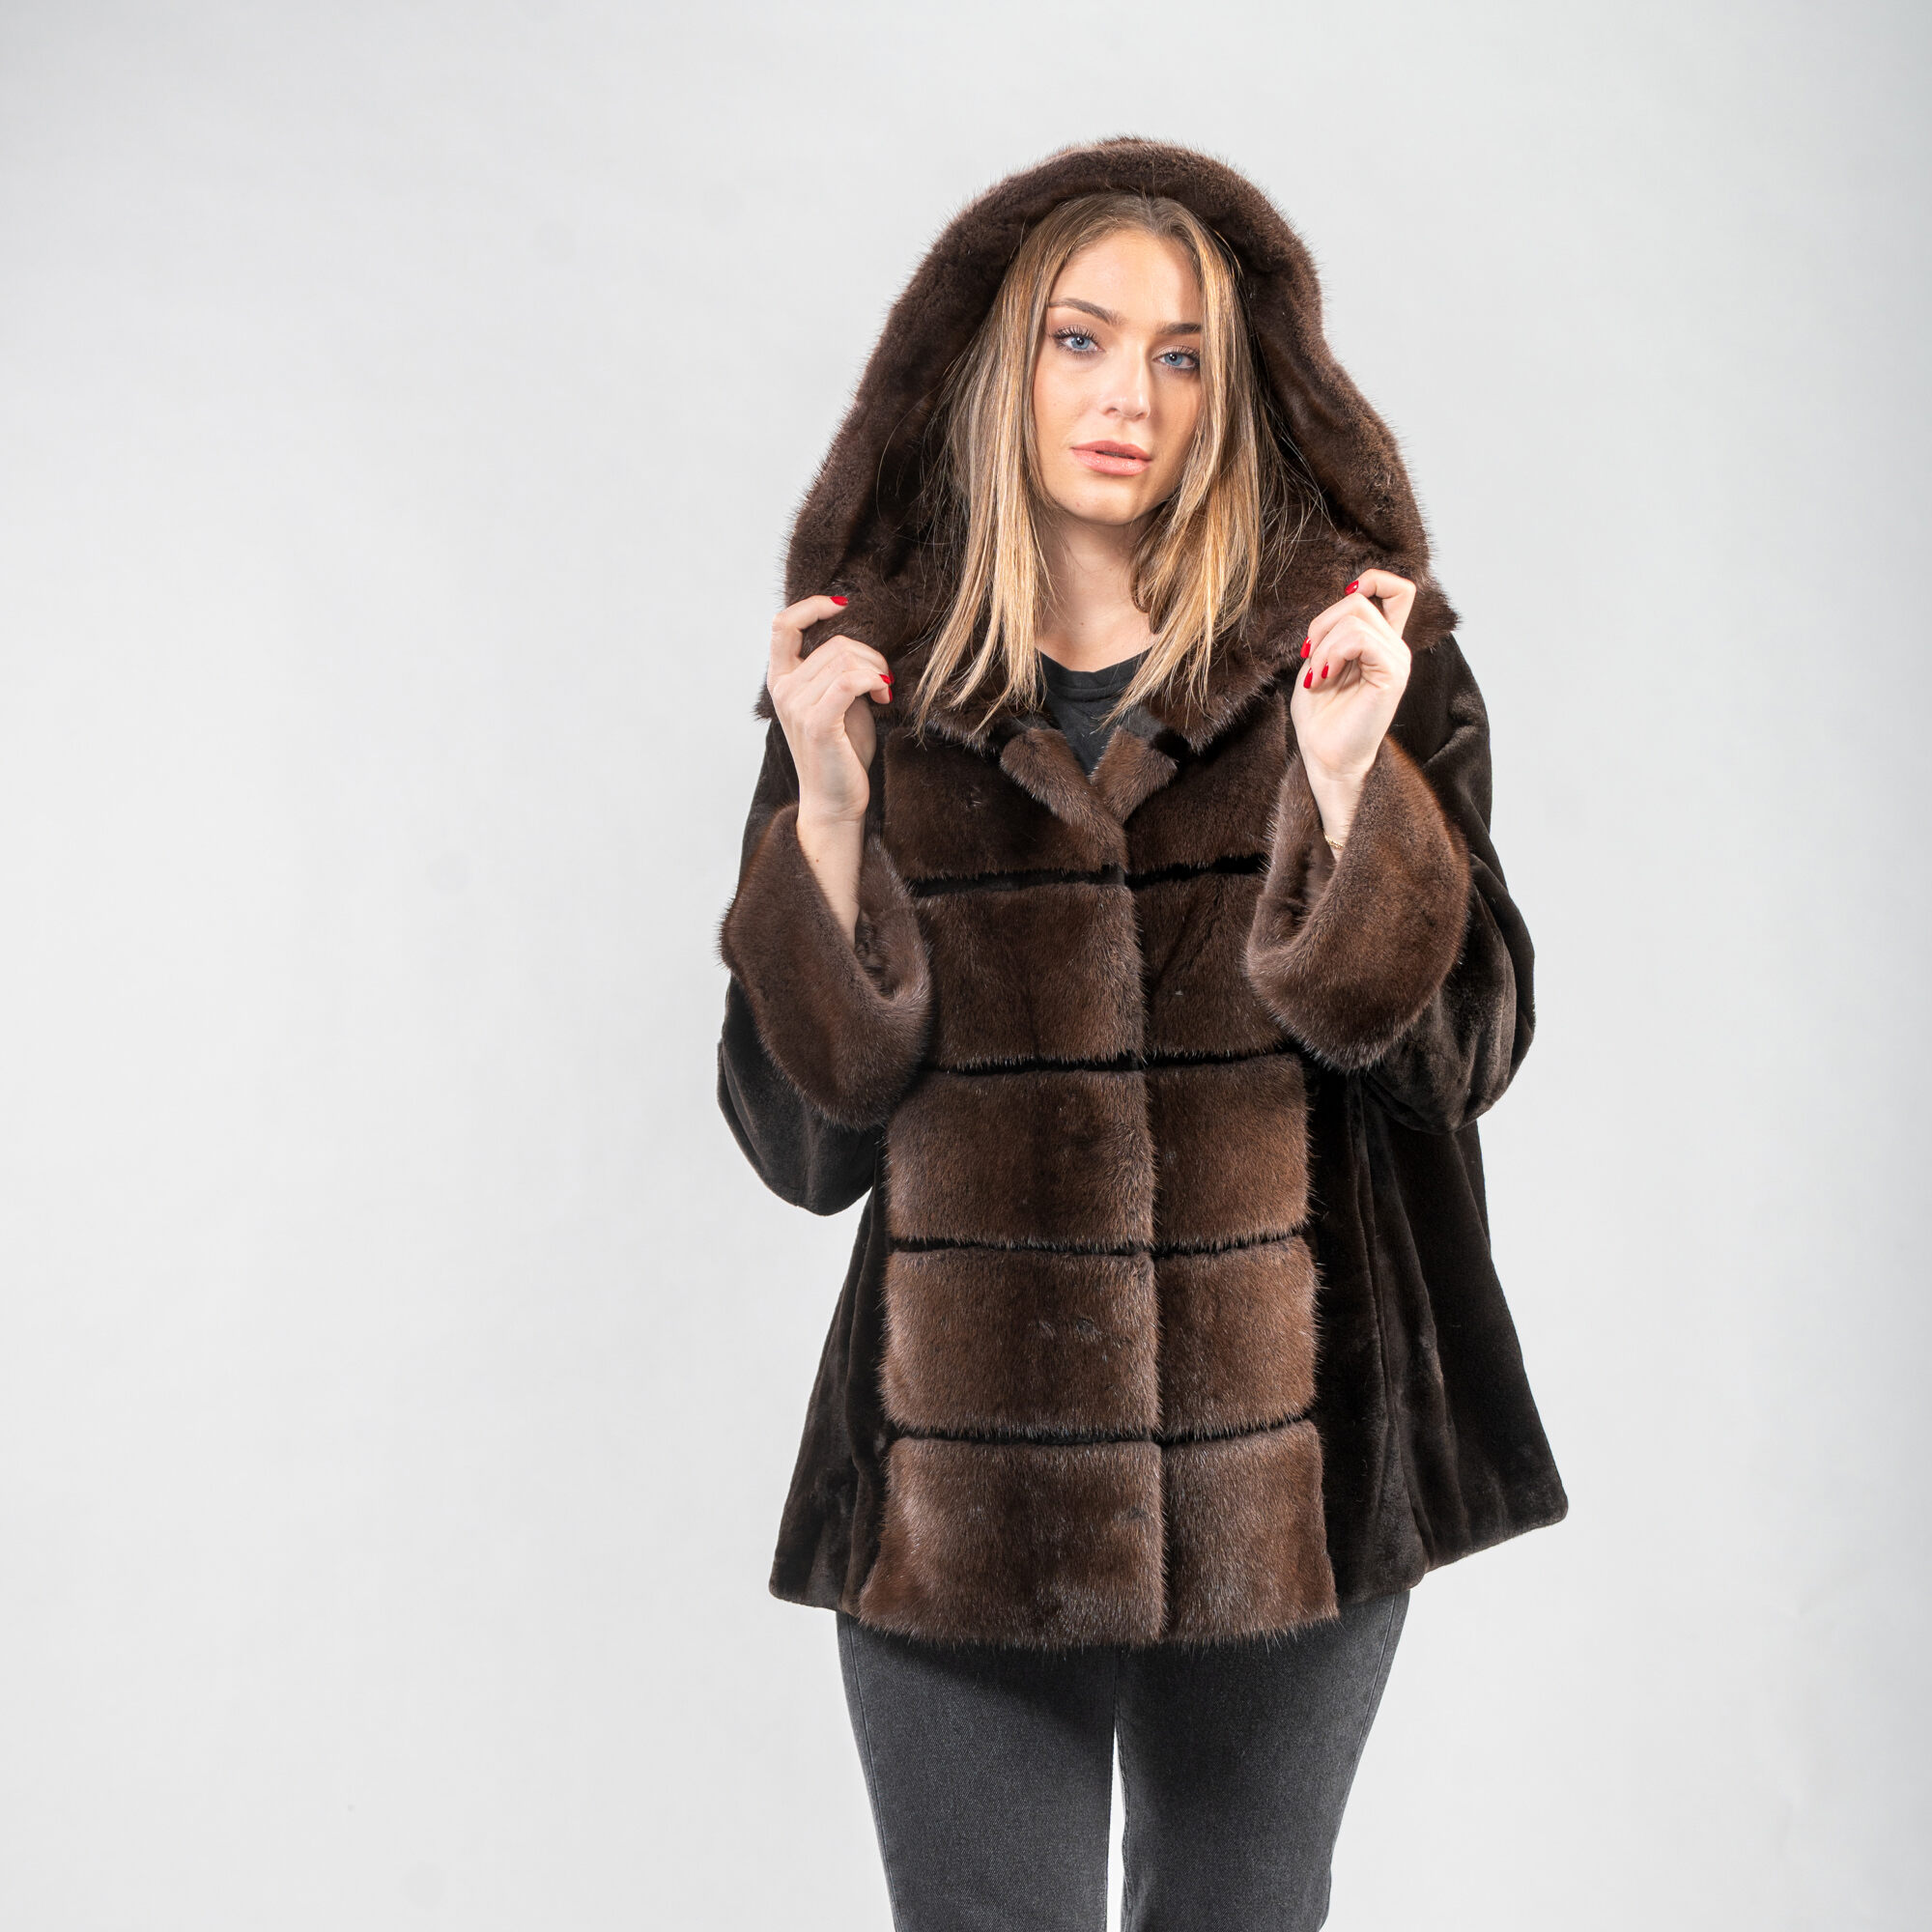 Mink fur hooded jacket in brown shades